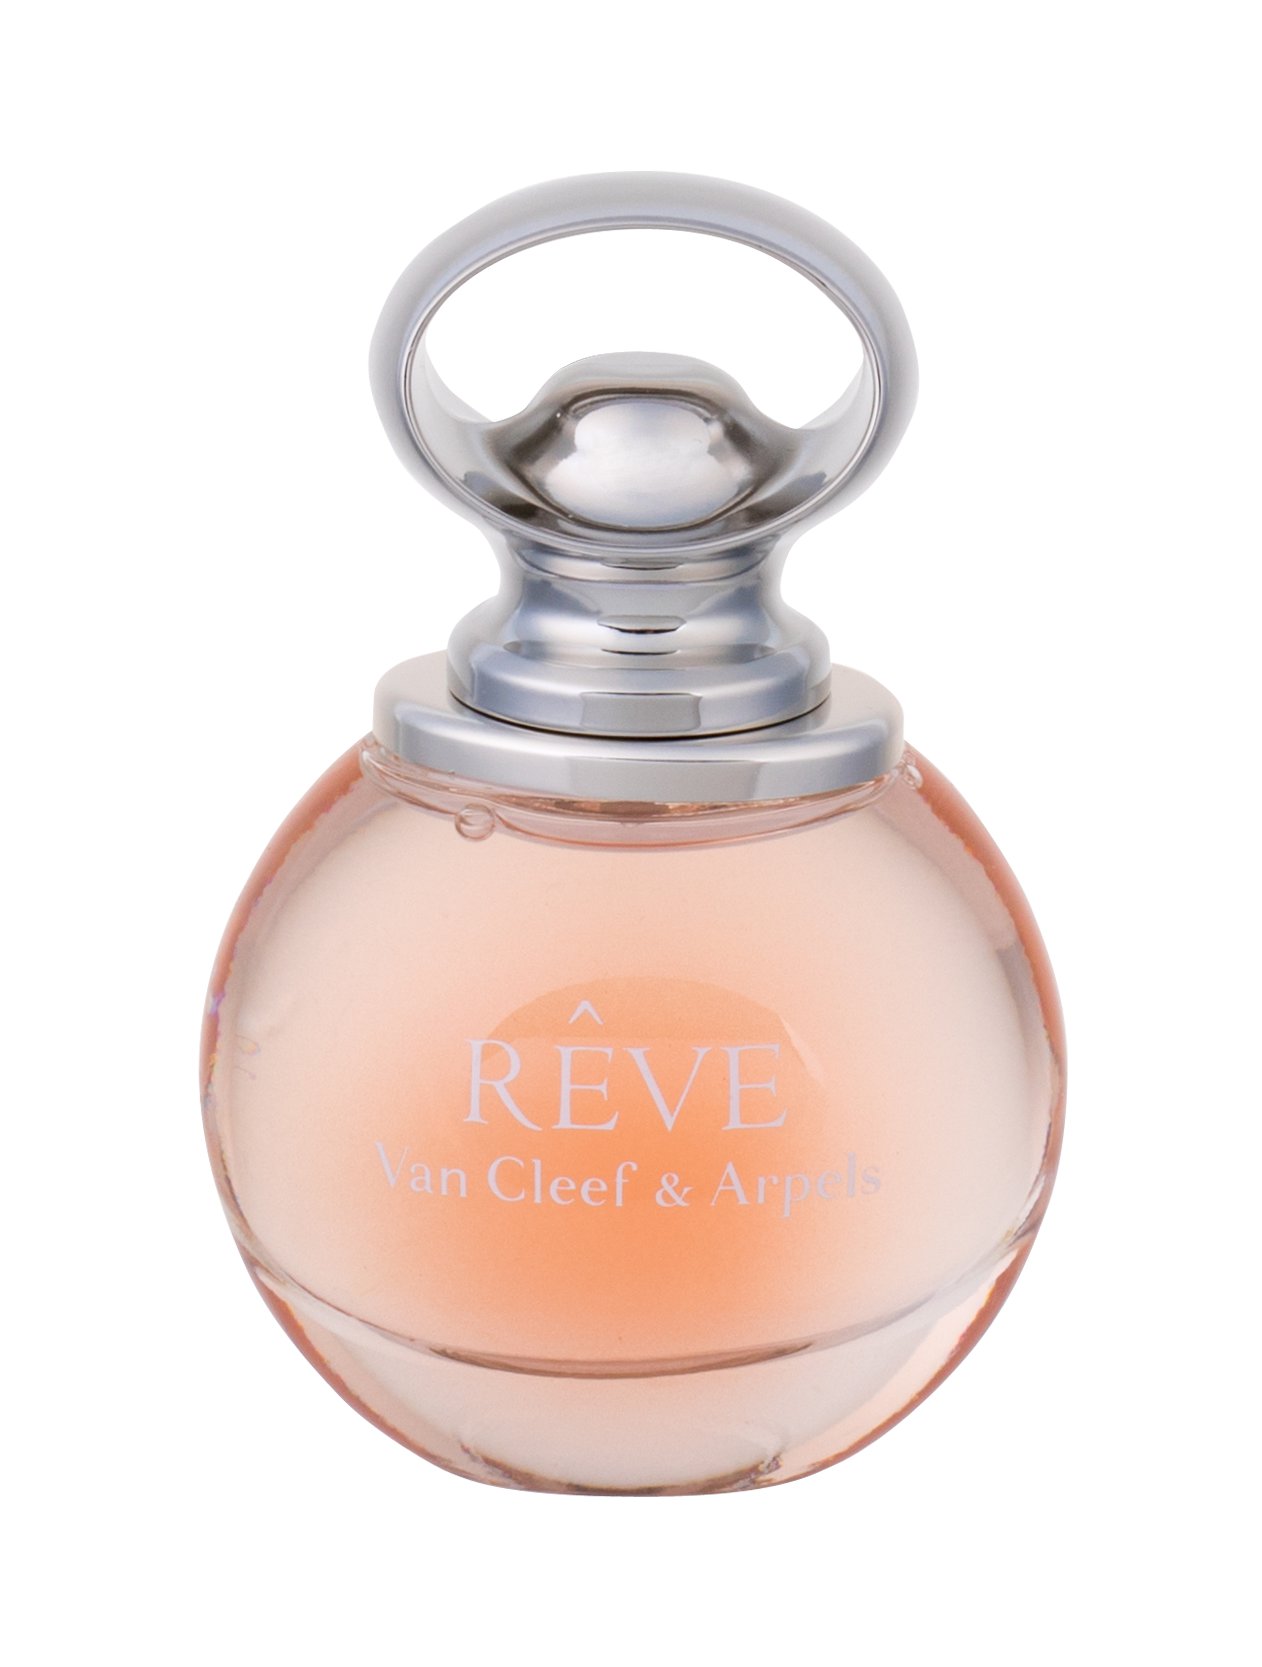 Van Cleef & Arpels Reve, Parfumovaná voda 50ml